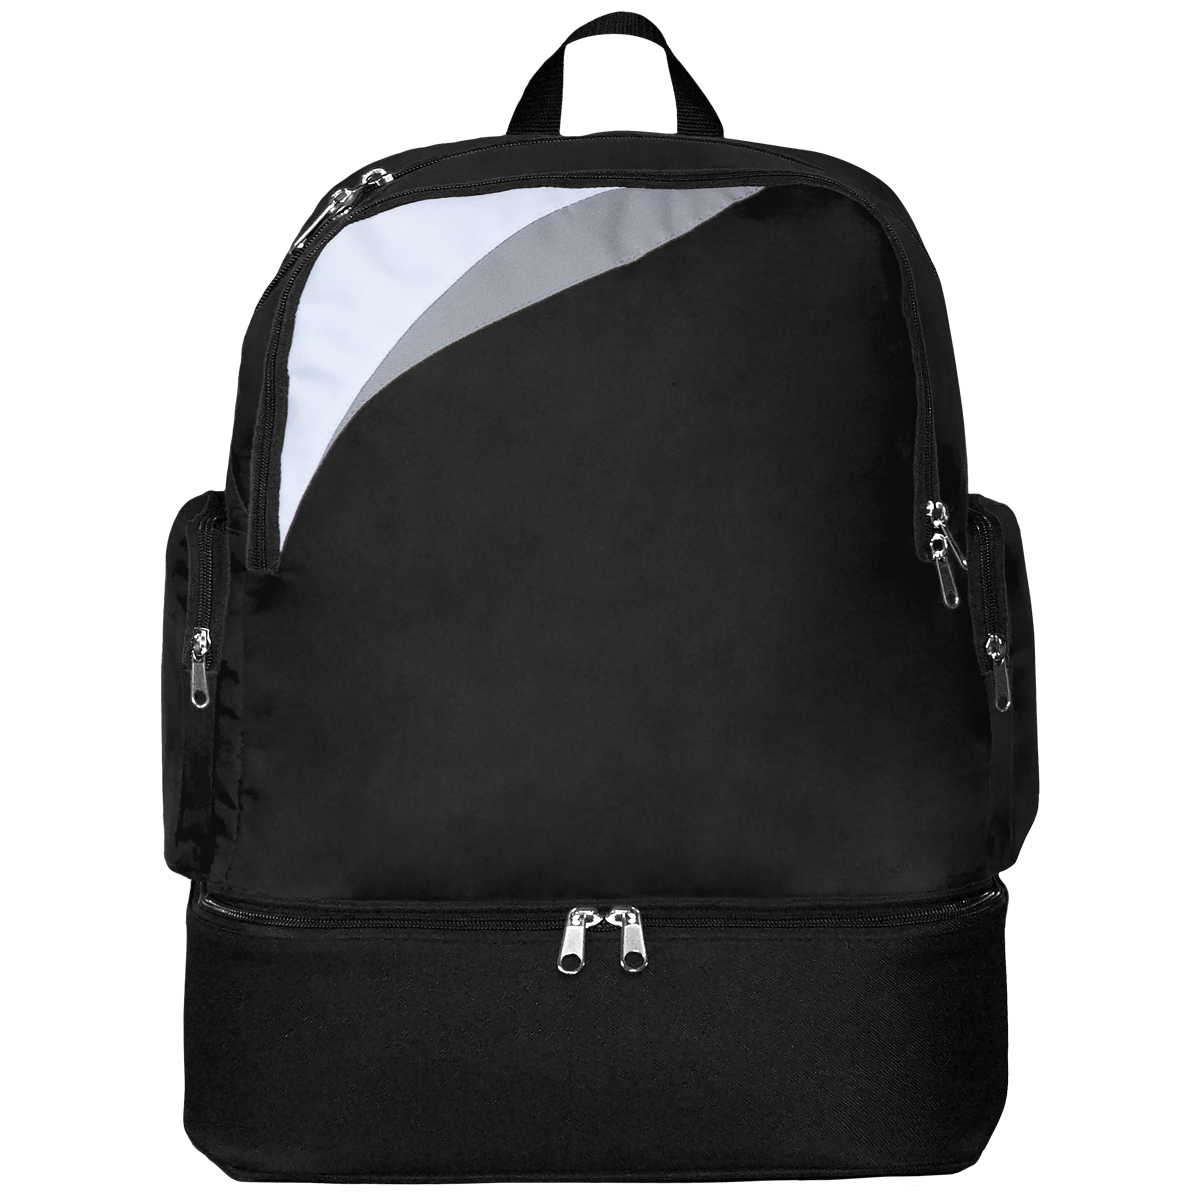 Sports Backpack Black / White / Light Grey